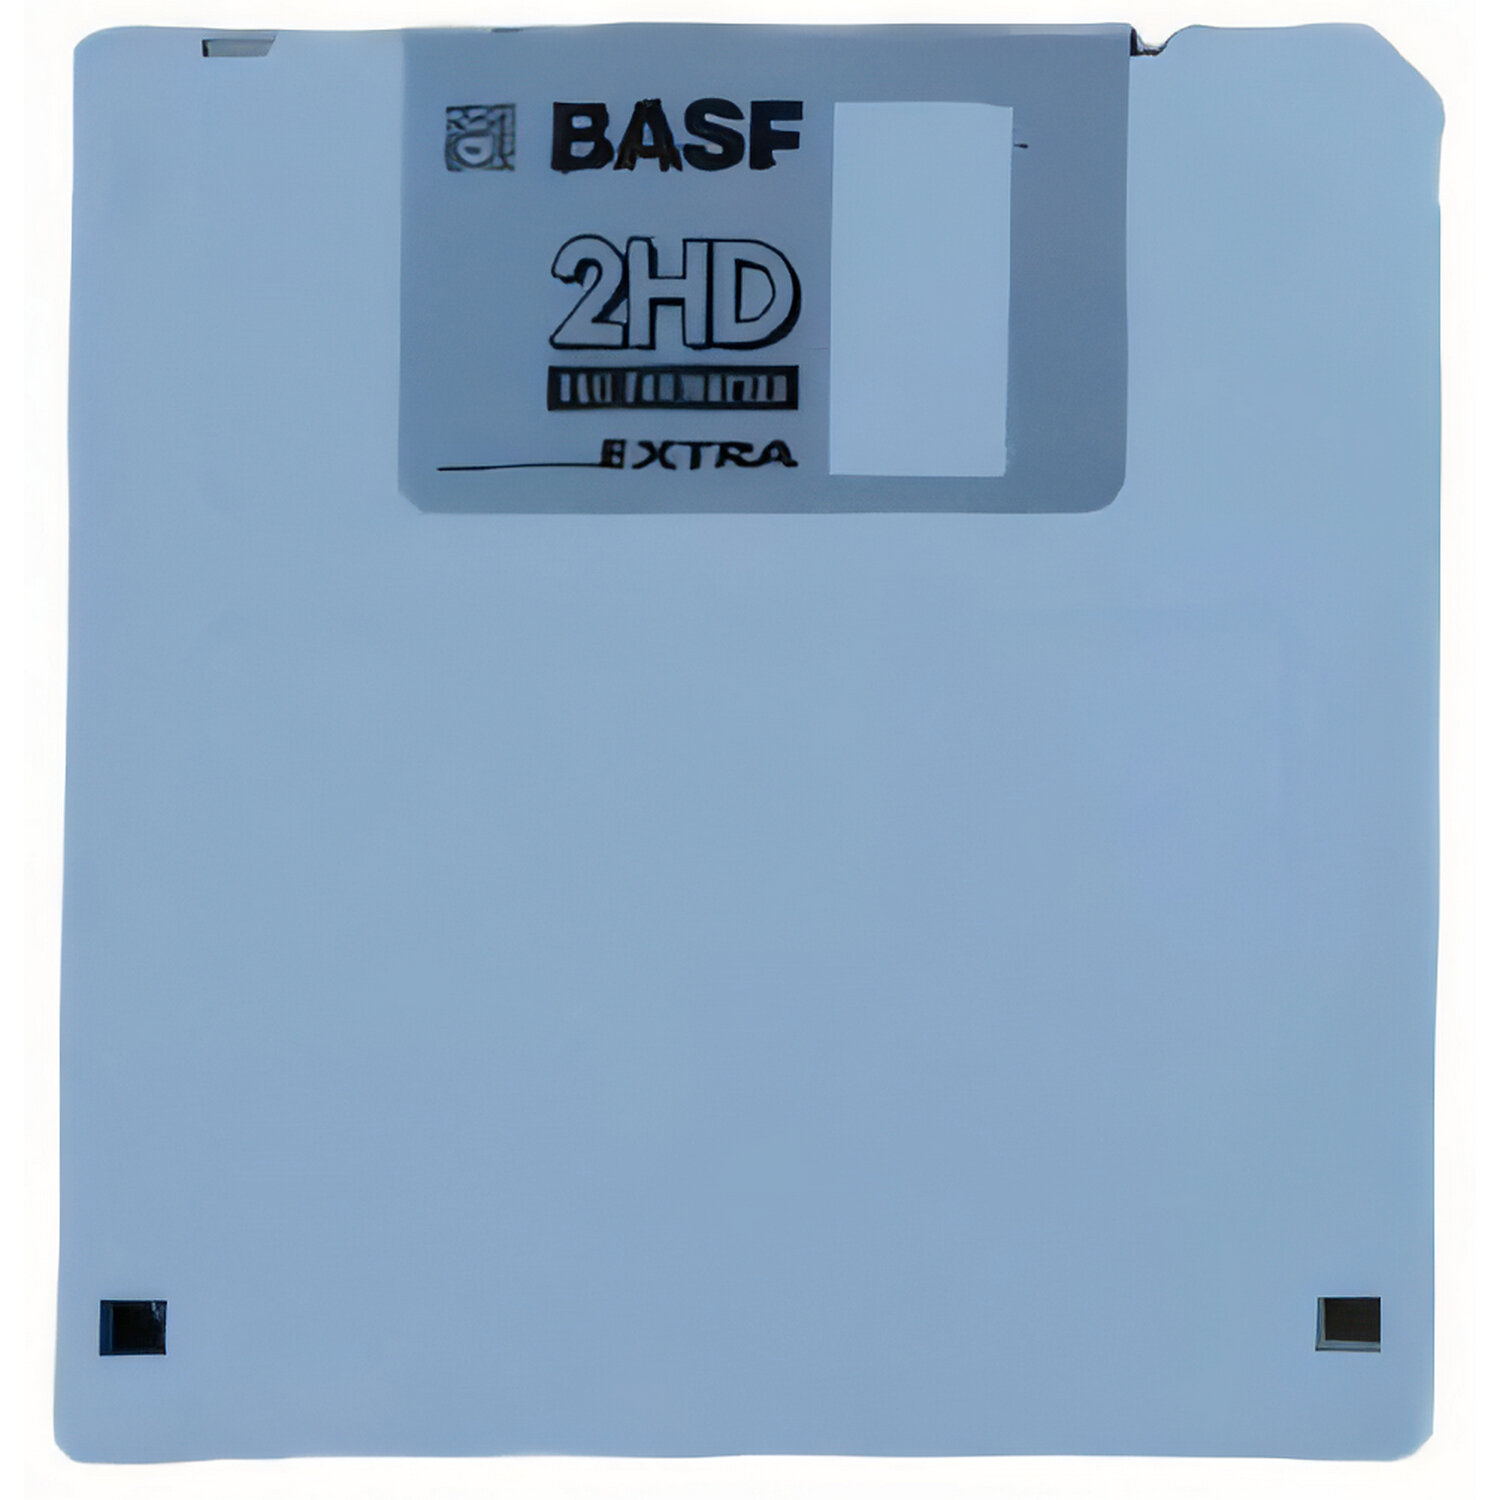 99417 ОЕМ Дискета 3.5" COLOR BASF 1,44 Мб MF 2HD в пластиковой упаковке (1 штука)